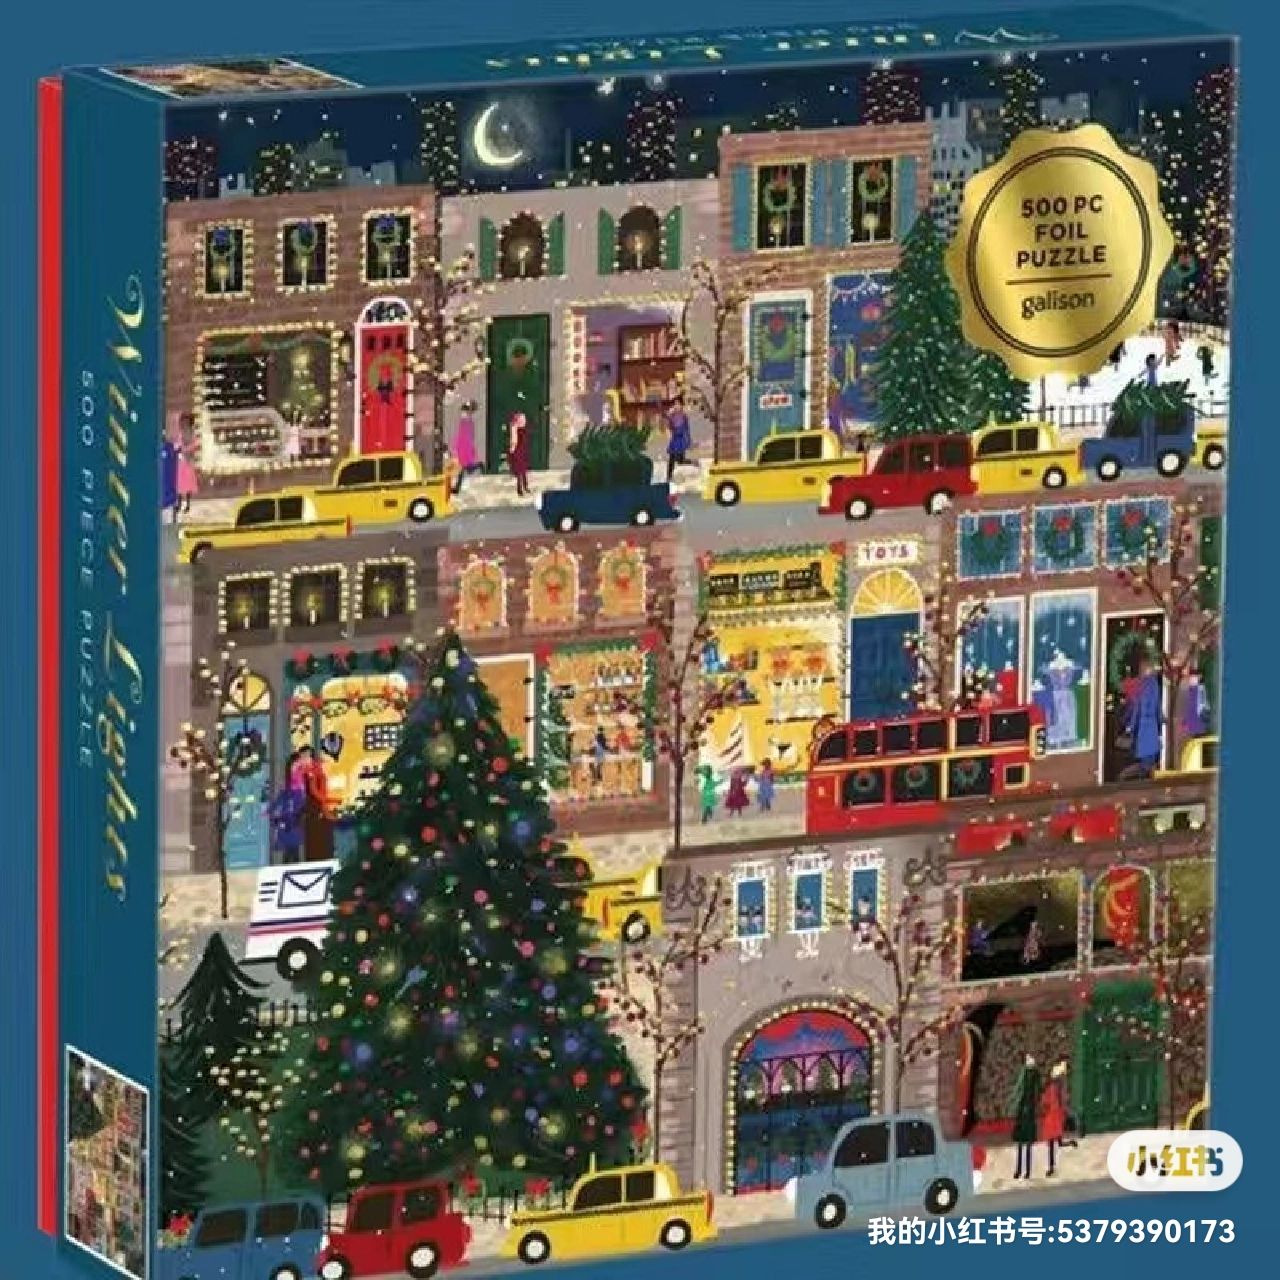 冬灯拼图500片Galison圣诞节日之夜拼图玩具高品质现货详情图1